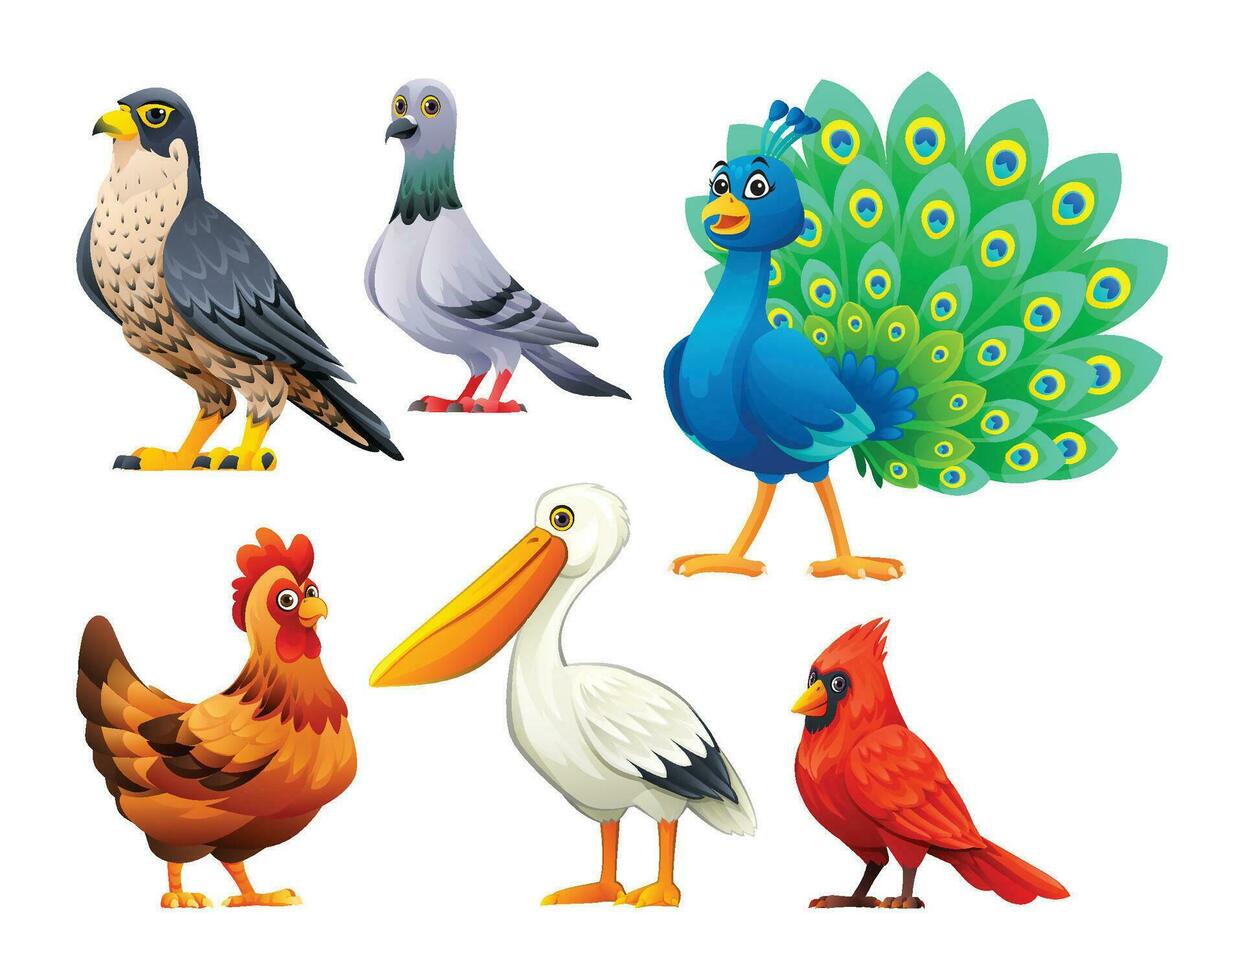 impostato di uccelli vettore cartone animato illustrazione. falco, piccione, pavone, gallina, pellicano e cardinale